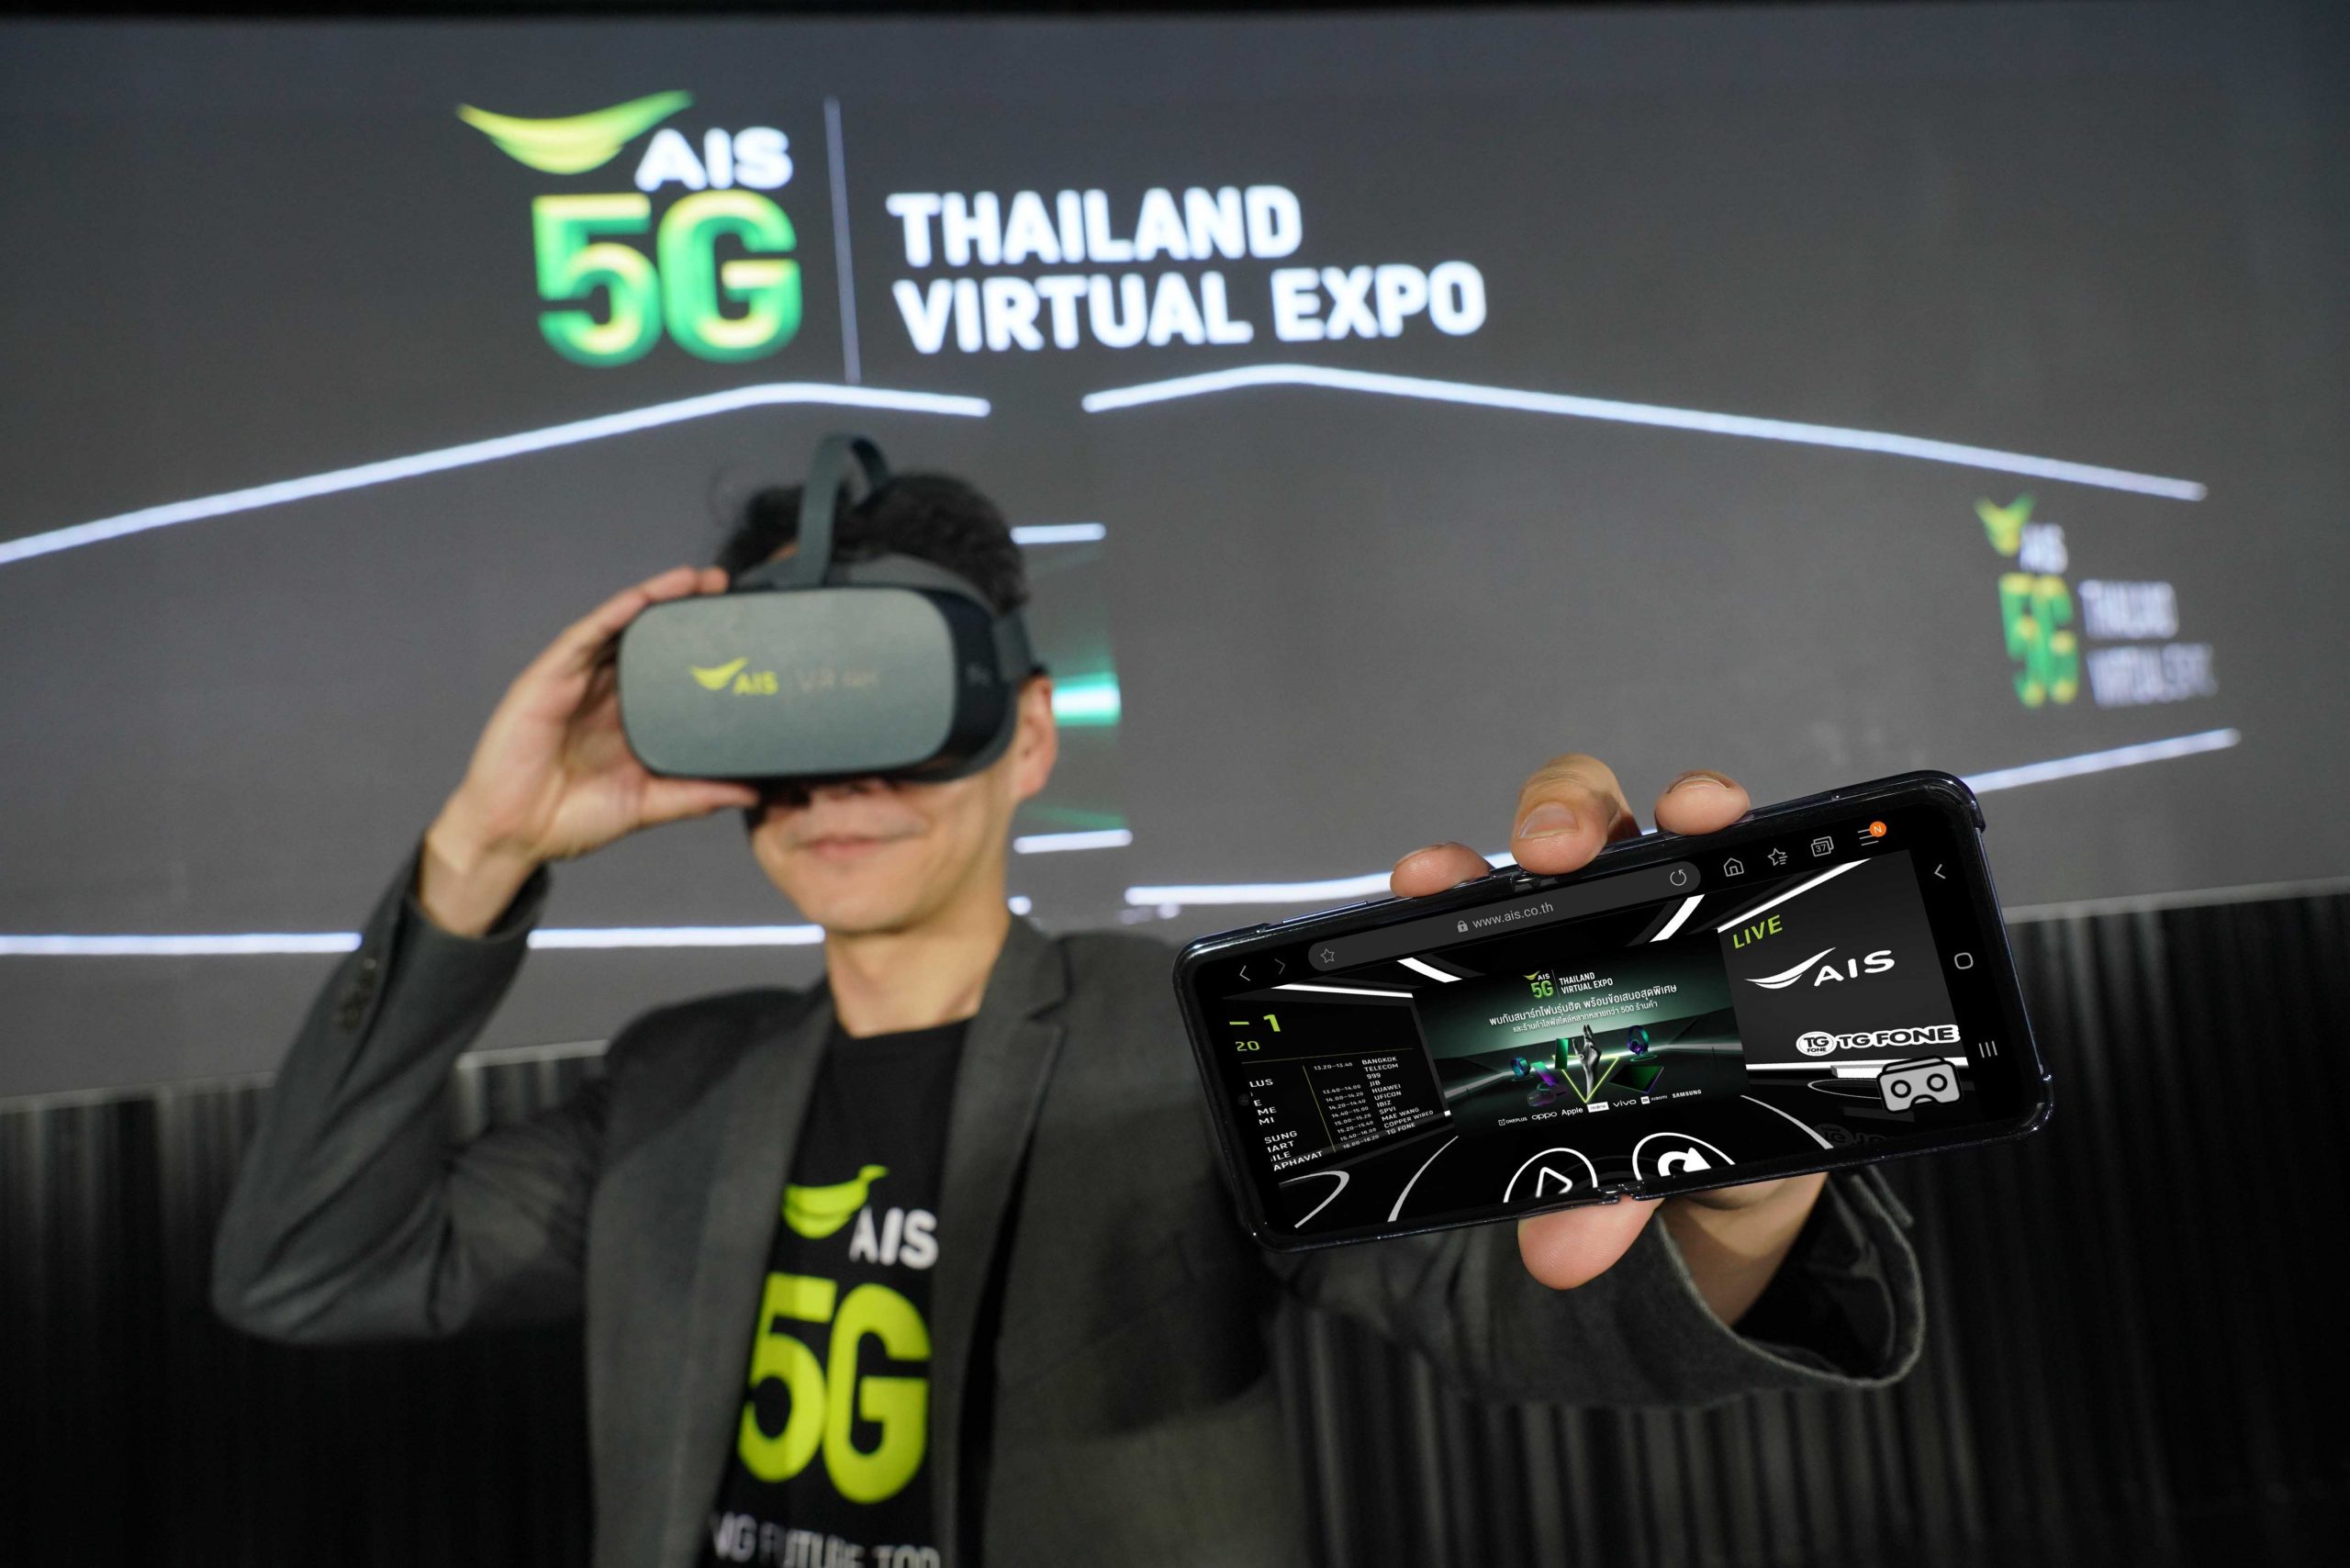 AIS 5G Thailand Virtual Expo ปรากฏการณ์แรกในไทย! มหกรรมสินค้าโมบาย/อาหาร/ไลฟ์สไตล์ บนโลกเสมือนจริง Virtual Reality